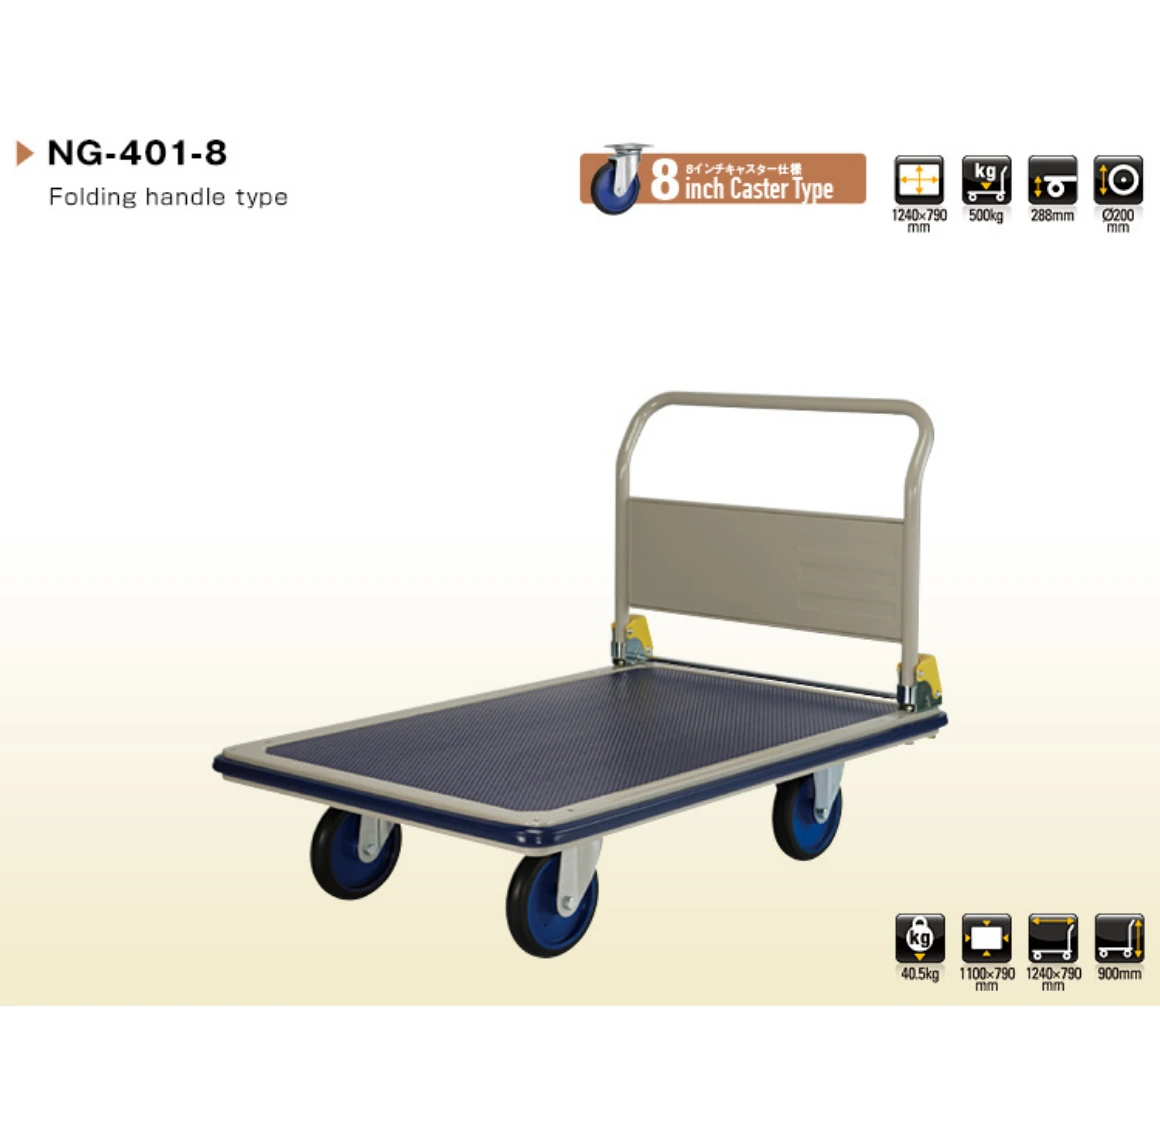 Prestar Platform Trolley, NG-401-8 - 500Kg Weight Capacity